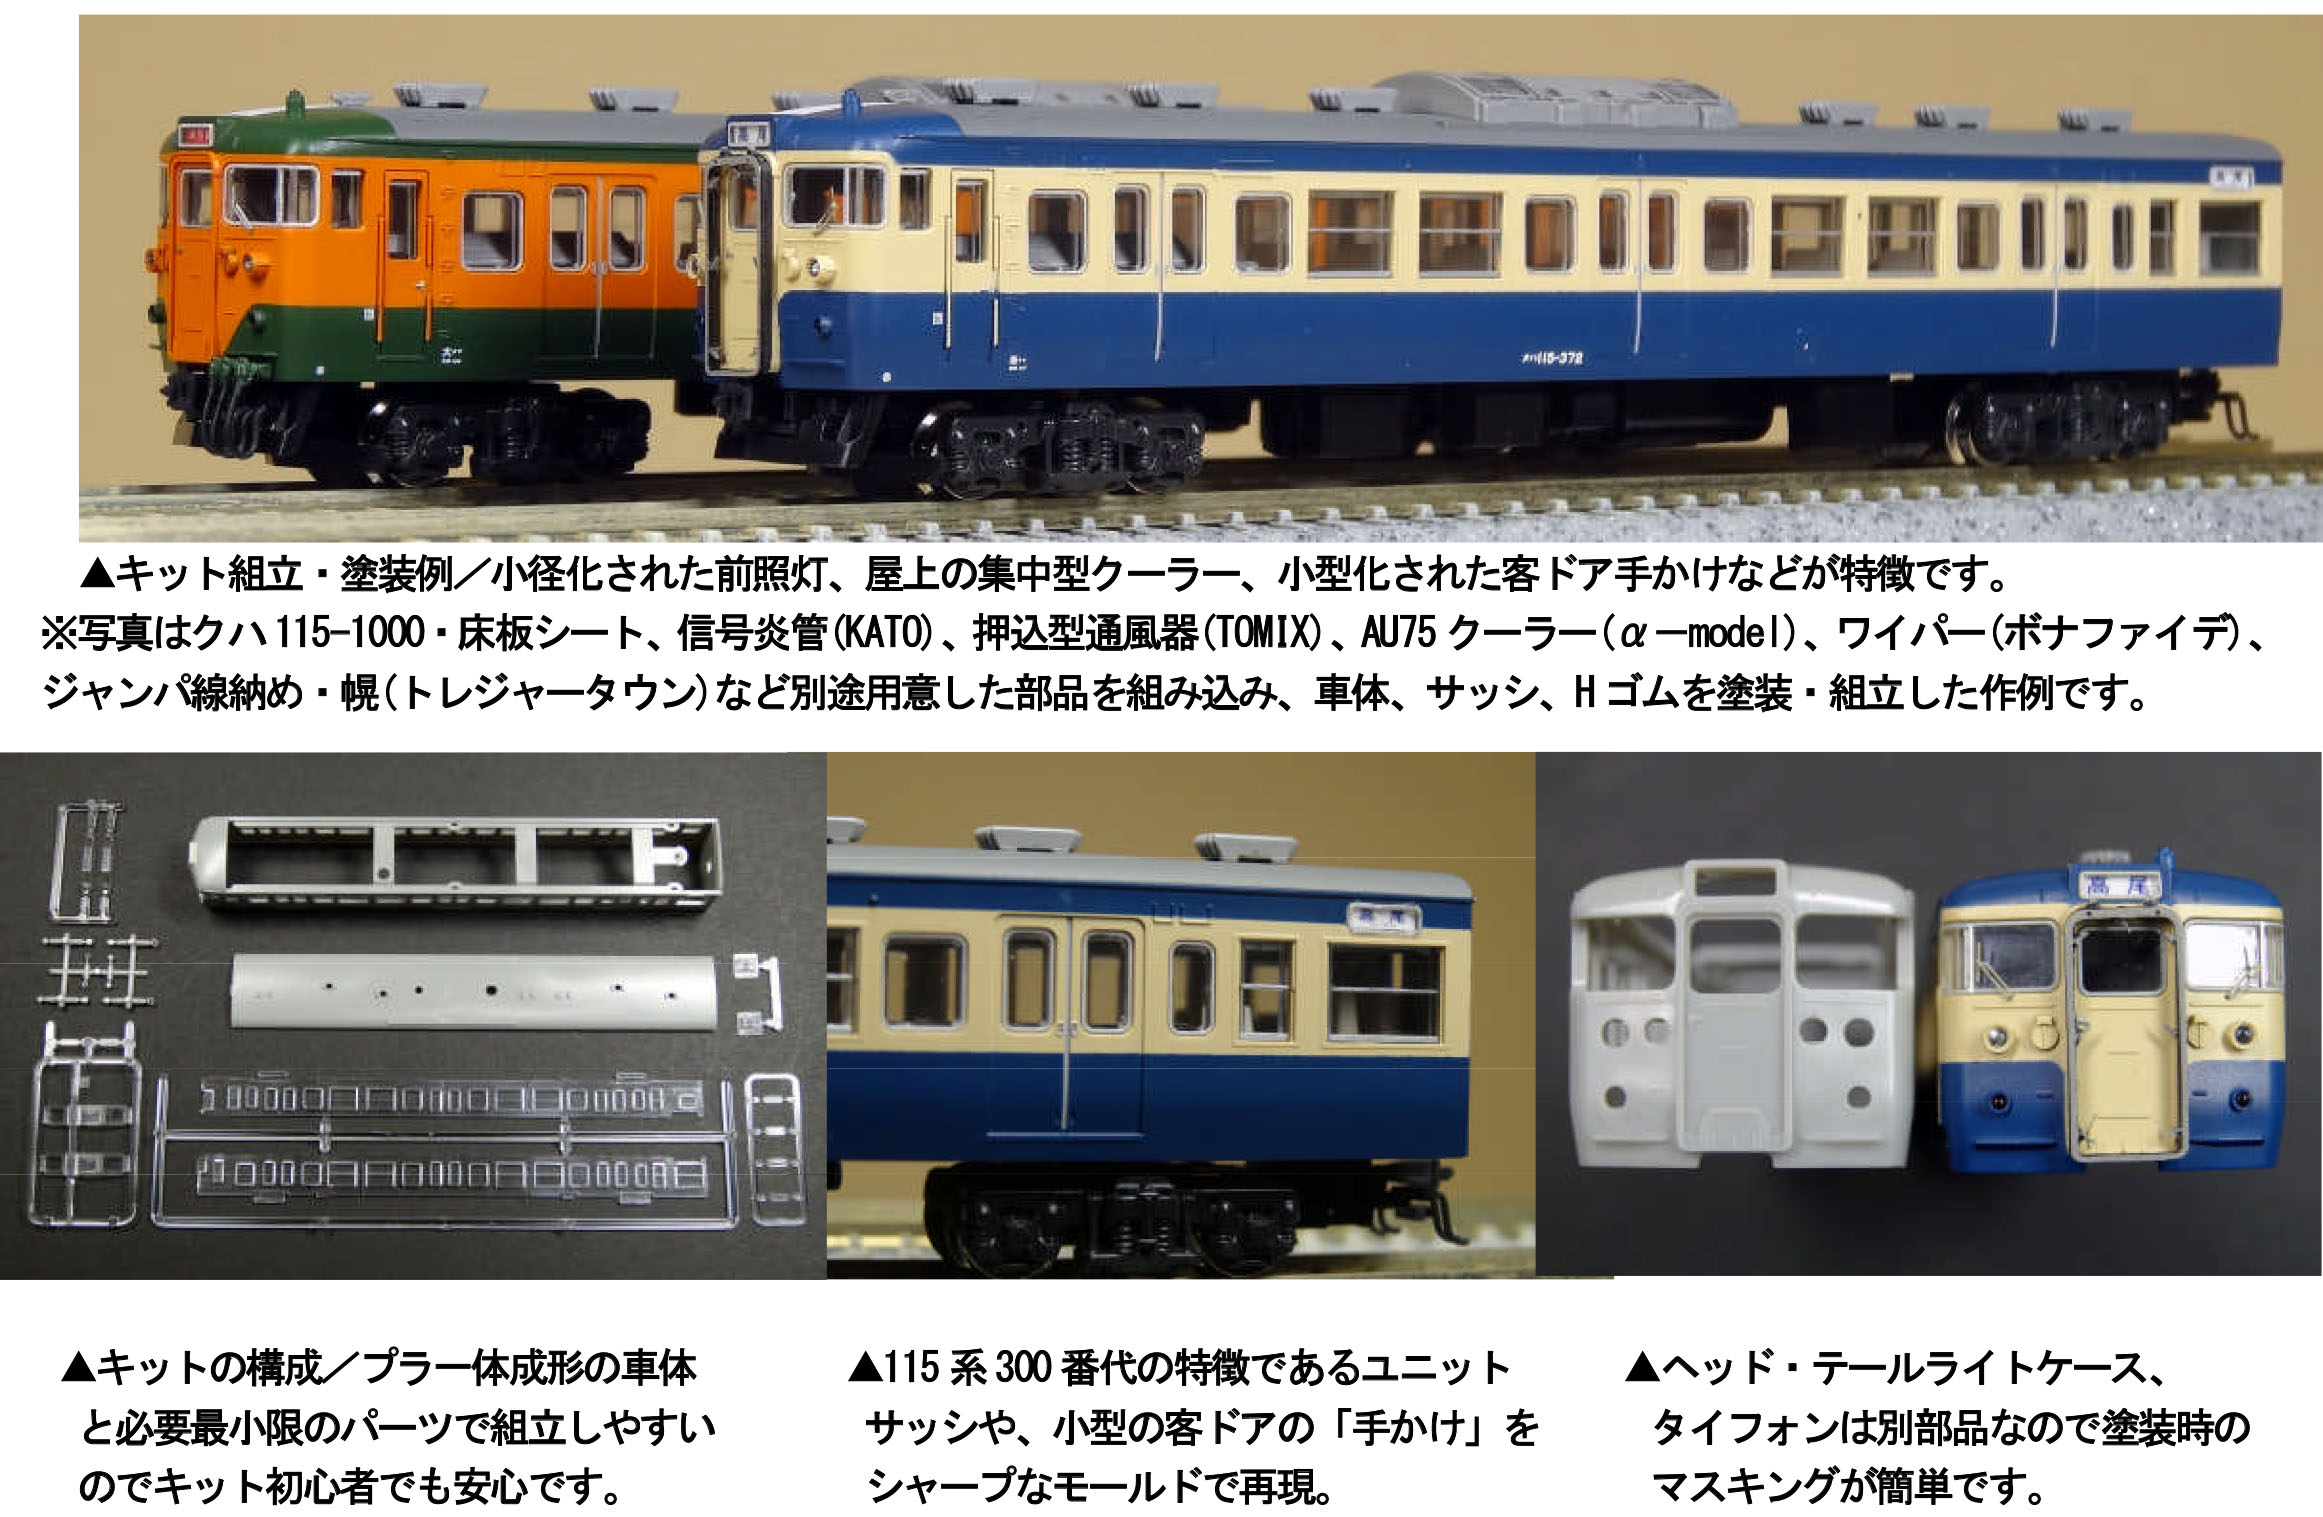 α-model No.2120 115系300番台(クハ115-300)キット 2両 タムタムオンラインショップ札幌店 通販 鉄道模型